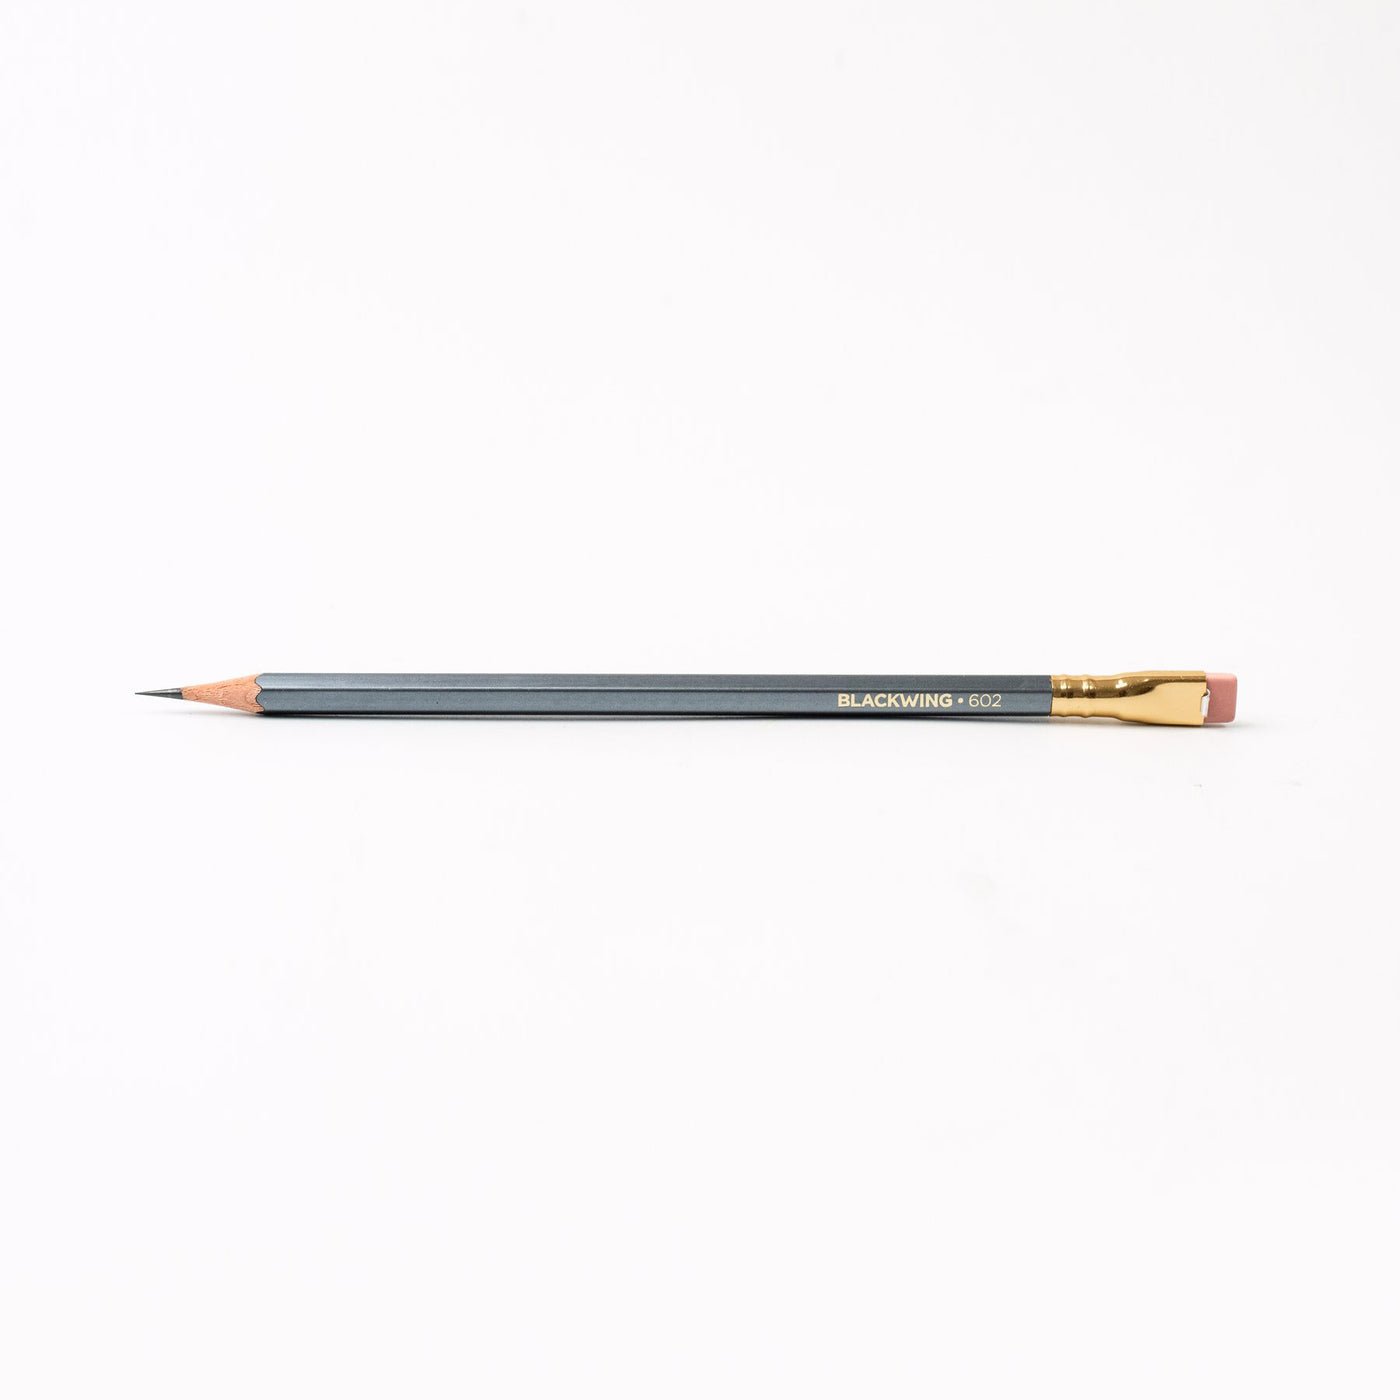 Single Blackwing Pencil - 602 Grey, Pink Eraser